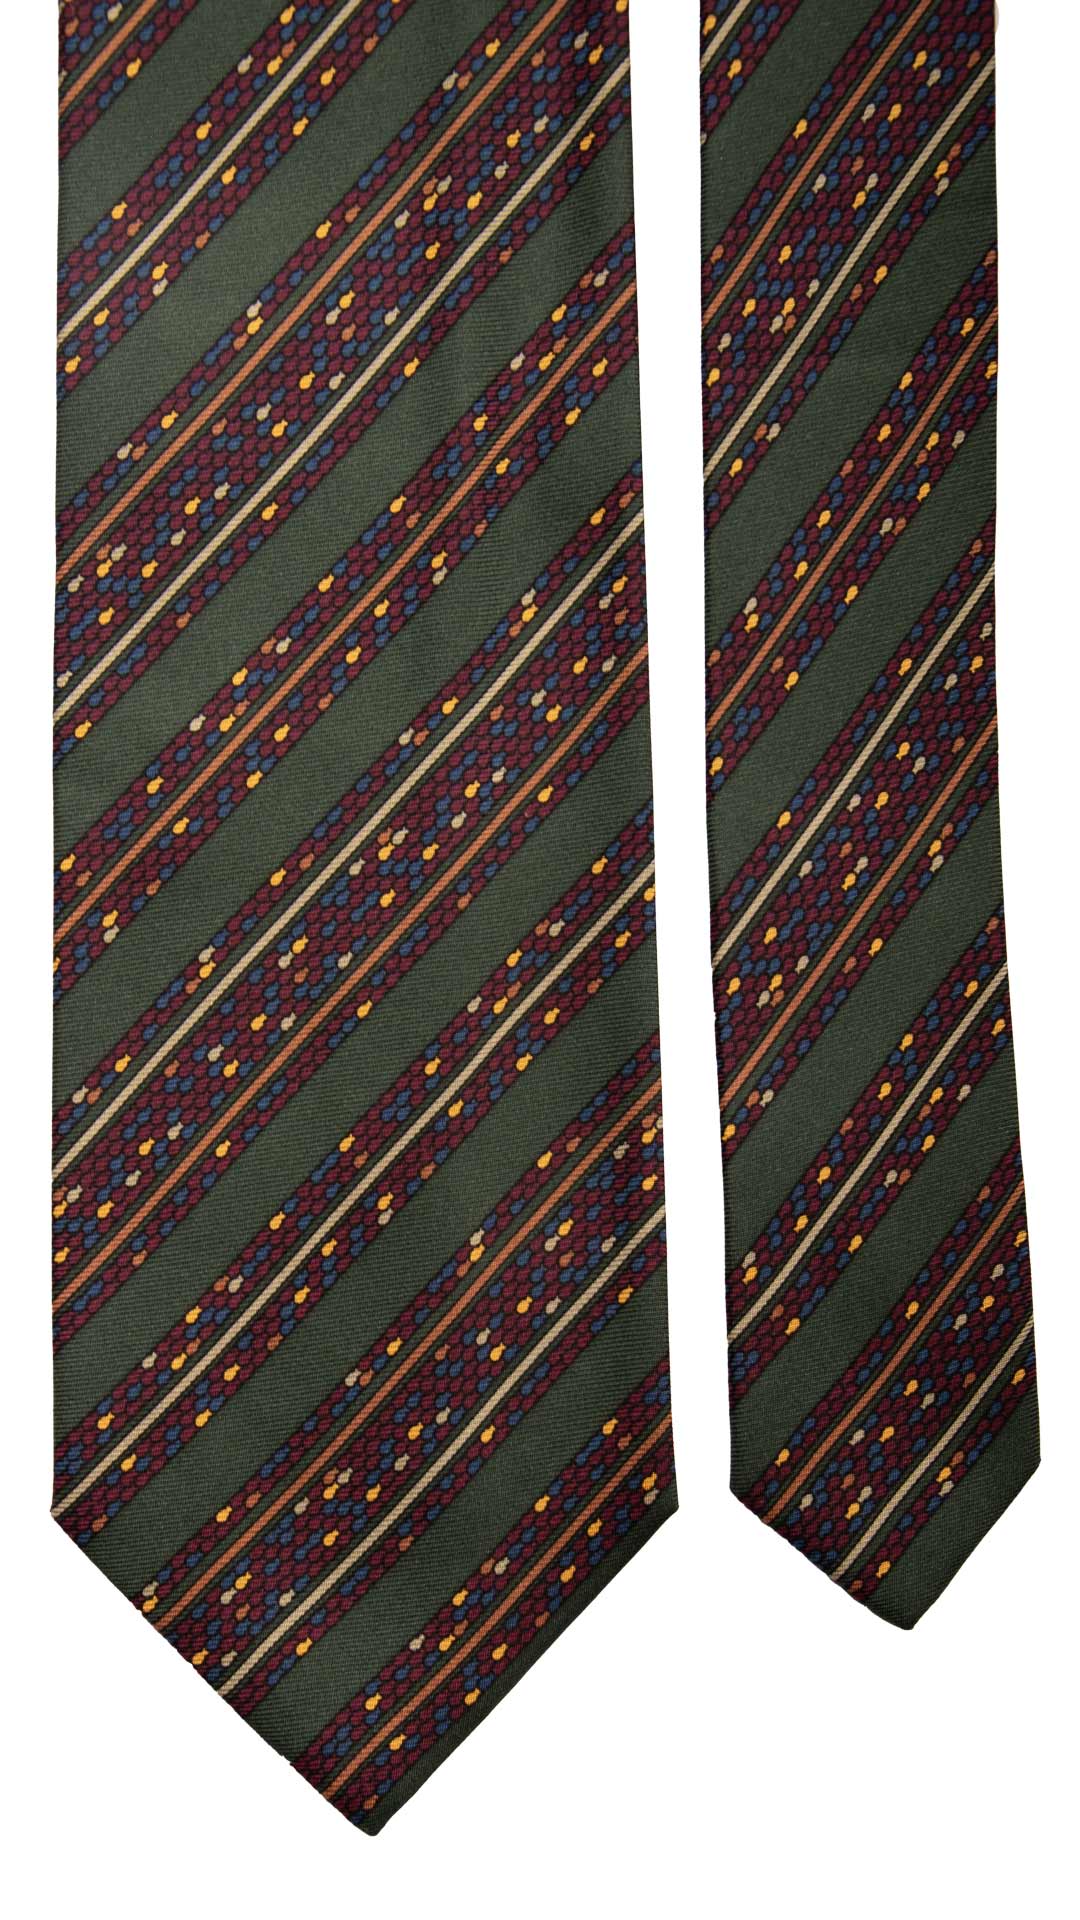 Cravatta Vintage Regimental in Twill di Seta Verde A Righe Multicolor CV817 Pala